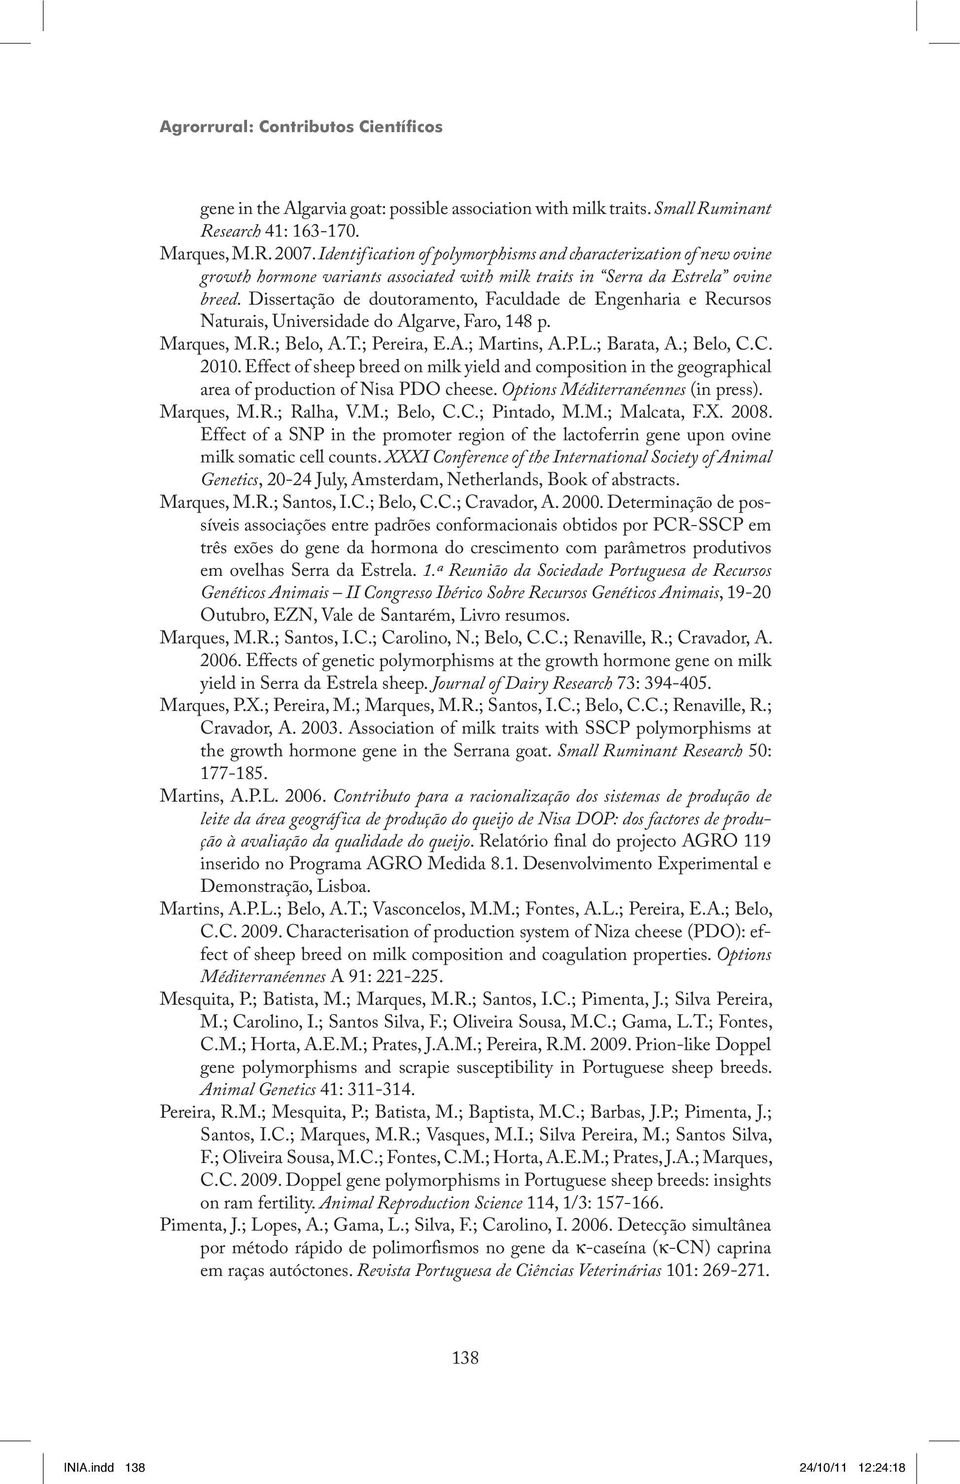 Dissertação de doutoramento, Faculdade de Engenharia e Recursos Naturais, Universidade do Algarve, Faro, 148 p. Marques, M.R.; Belo, A.T.; Pereira, E.A.; Martins, A.P.L.; Barata, A.; Belo, C.C. 2010.